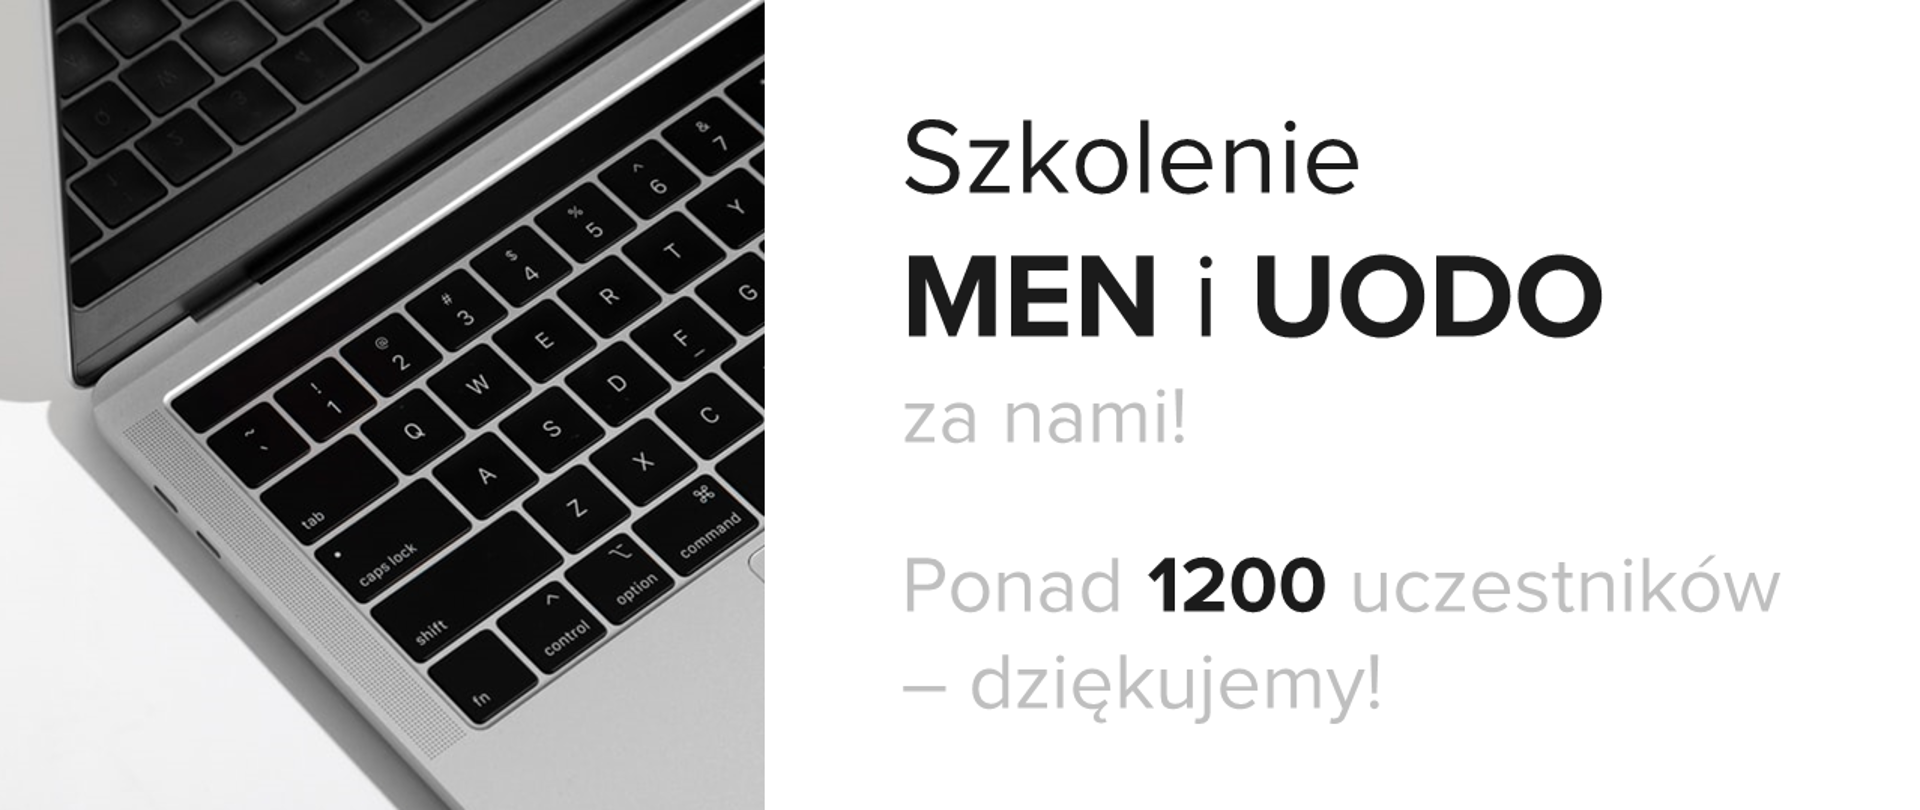 Zdjęcie laptopa, a obok tekst: "Szkolenie MEN i UODO za nami! Ponad 1200 uczestników – dziękujemy!"